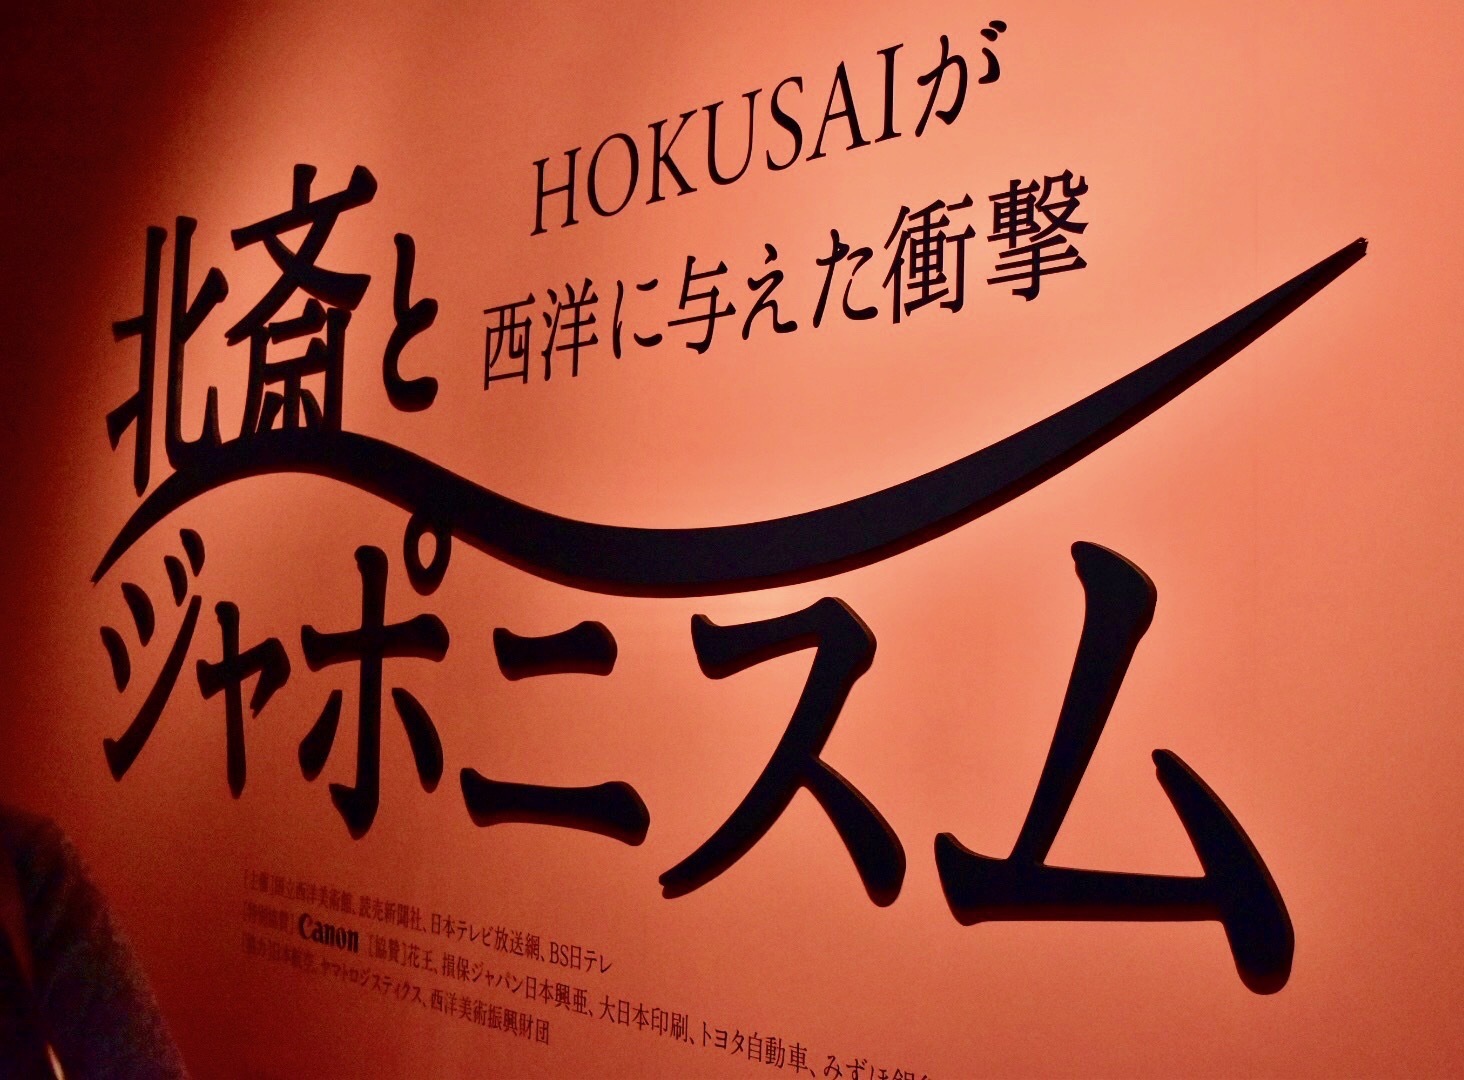 葛飾北斎と印象派の巨匠たちが夢の共演 北斎とジャポニスム Hokusaiが西洋に与えた衝撃 をレポート Spice エンタメ特化型情報メディア スパイス